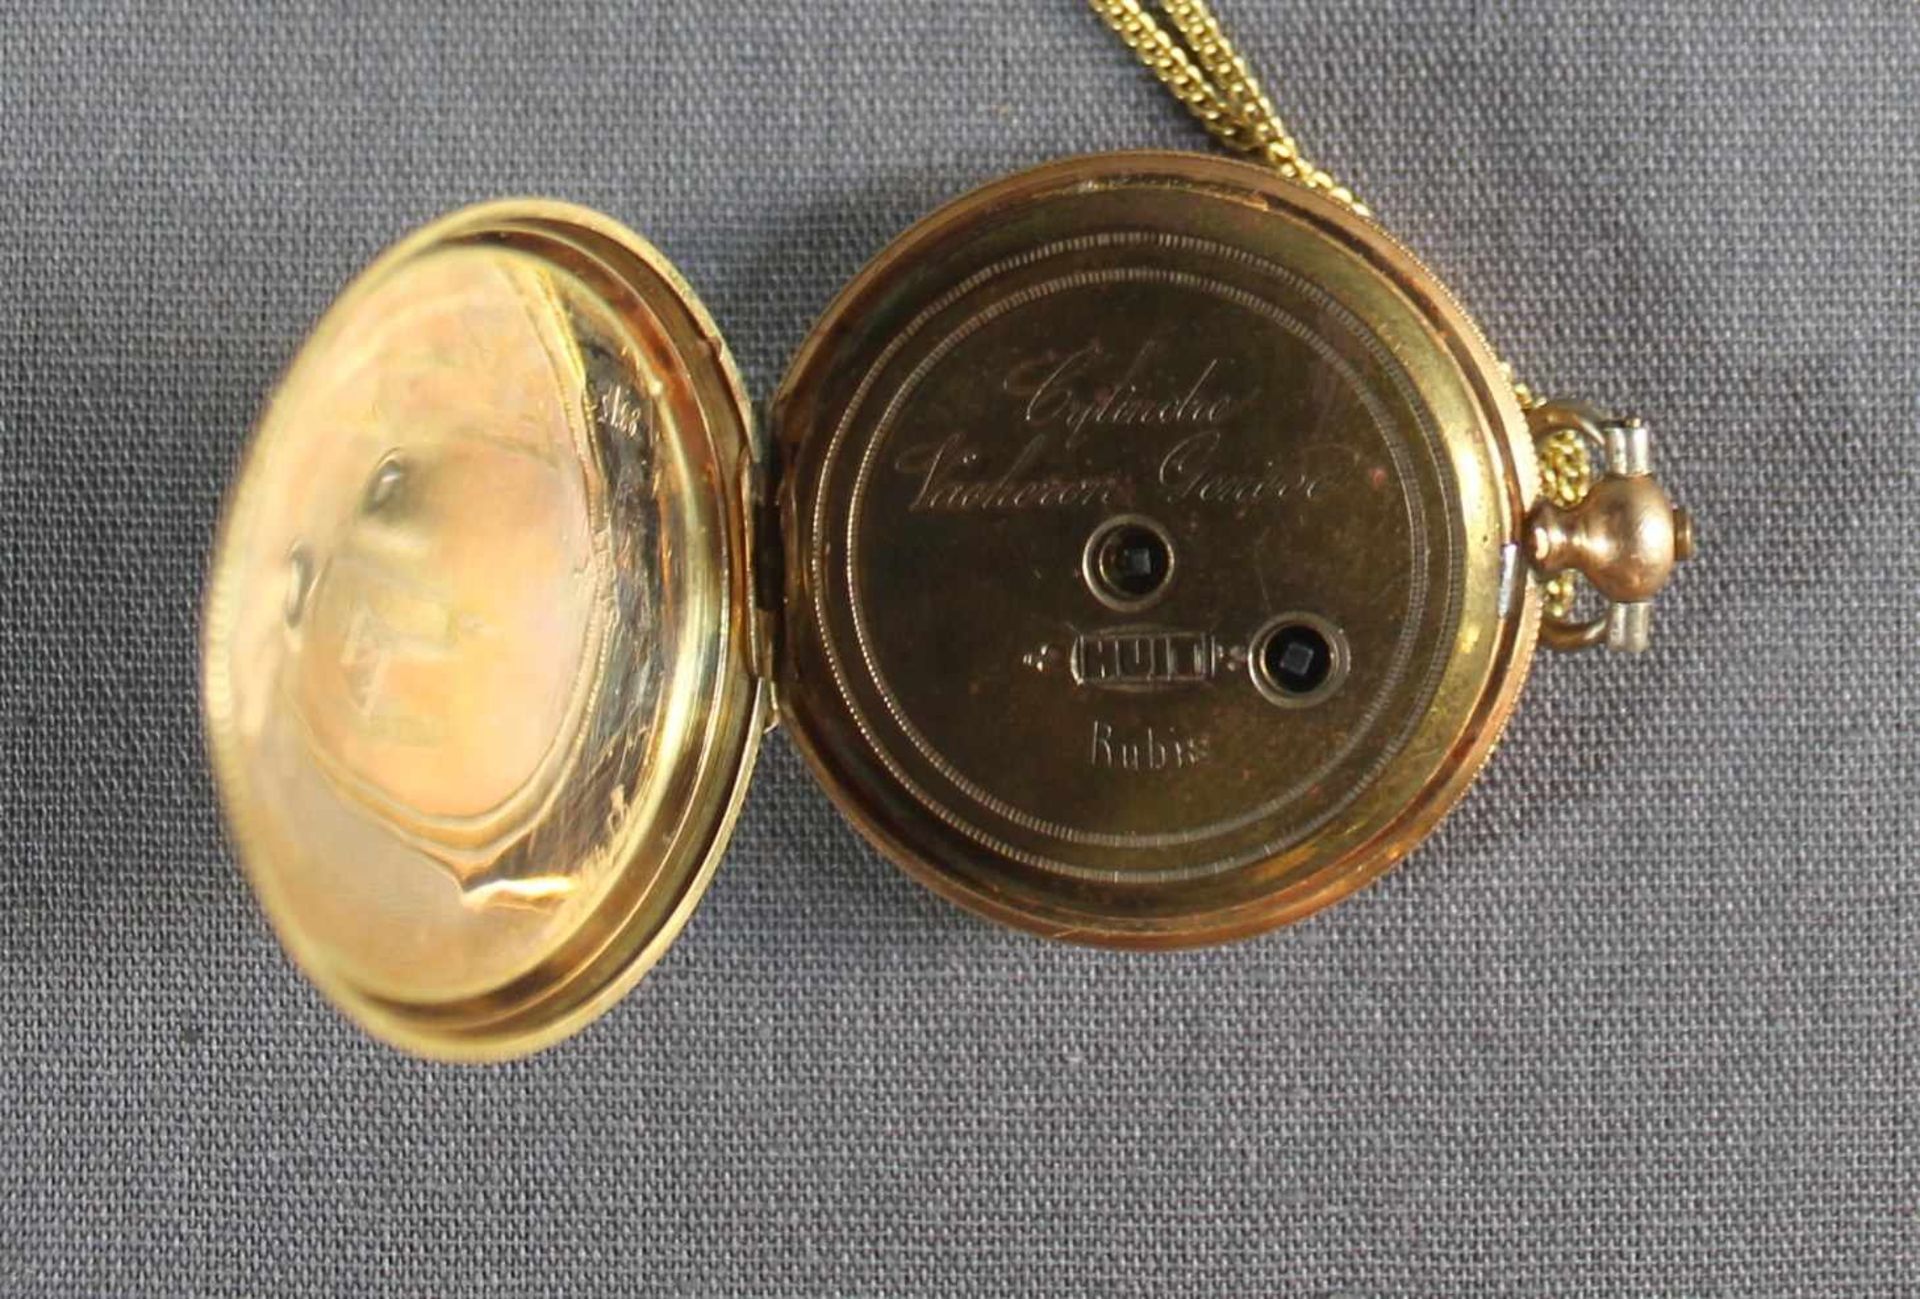 1 Damen-Taschenuhr 14kt.Gg (585/000), Schlüsselaufzug, No. 51511, weißes Zifferblatt, schwarze - Bild 3 aus 4